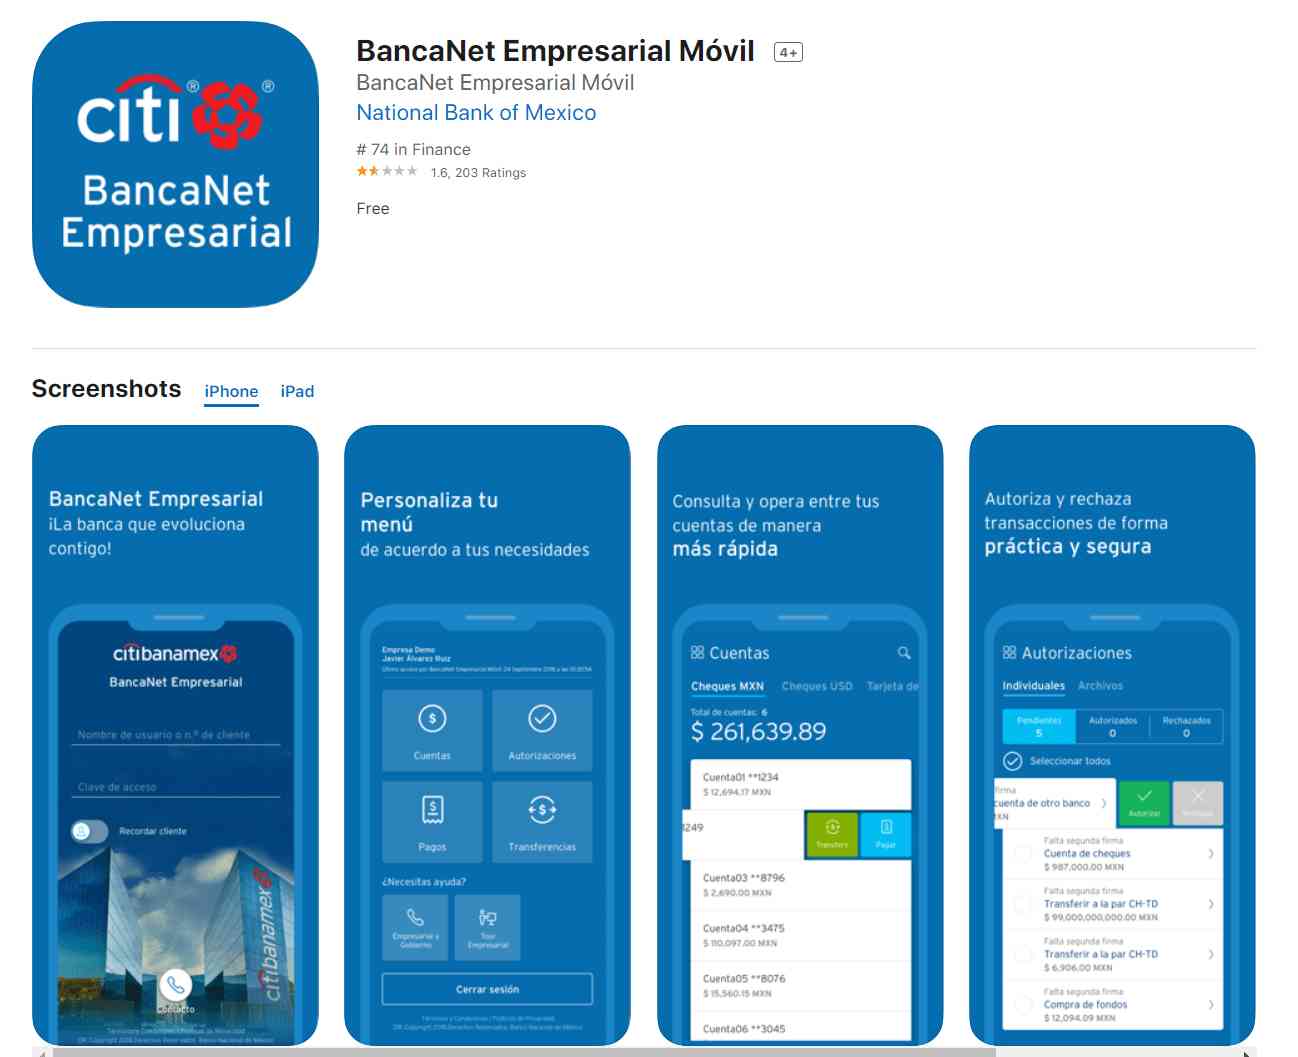 BancaNet Empresarial Móvil en Apple App Store